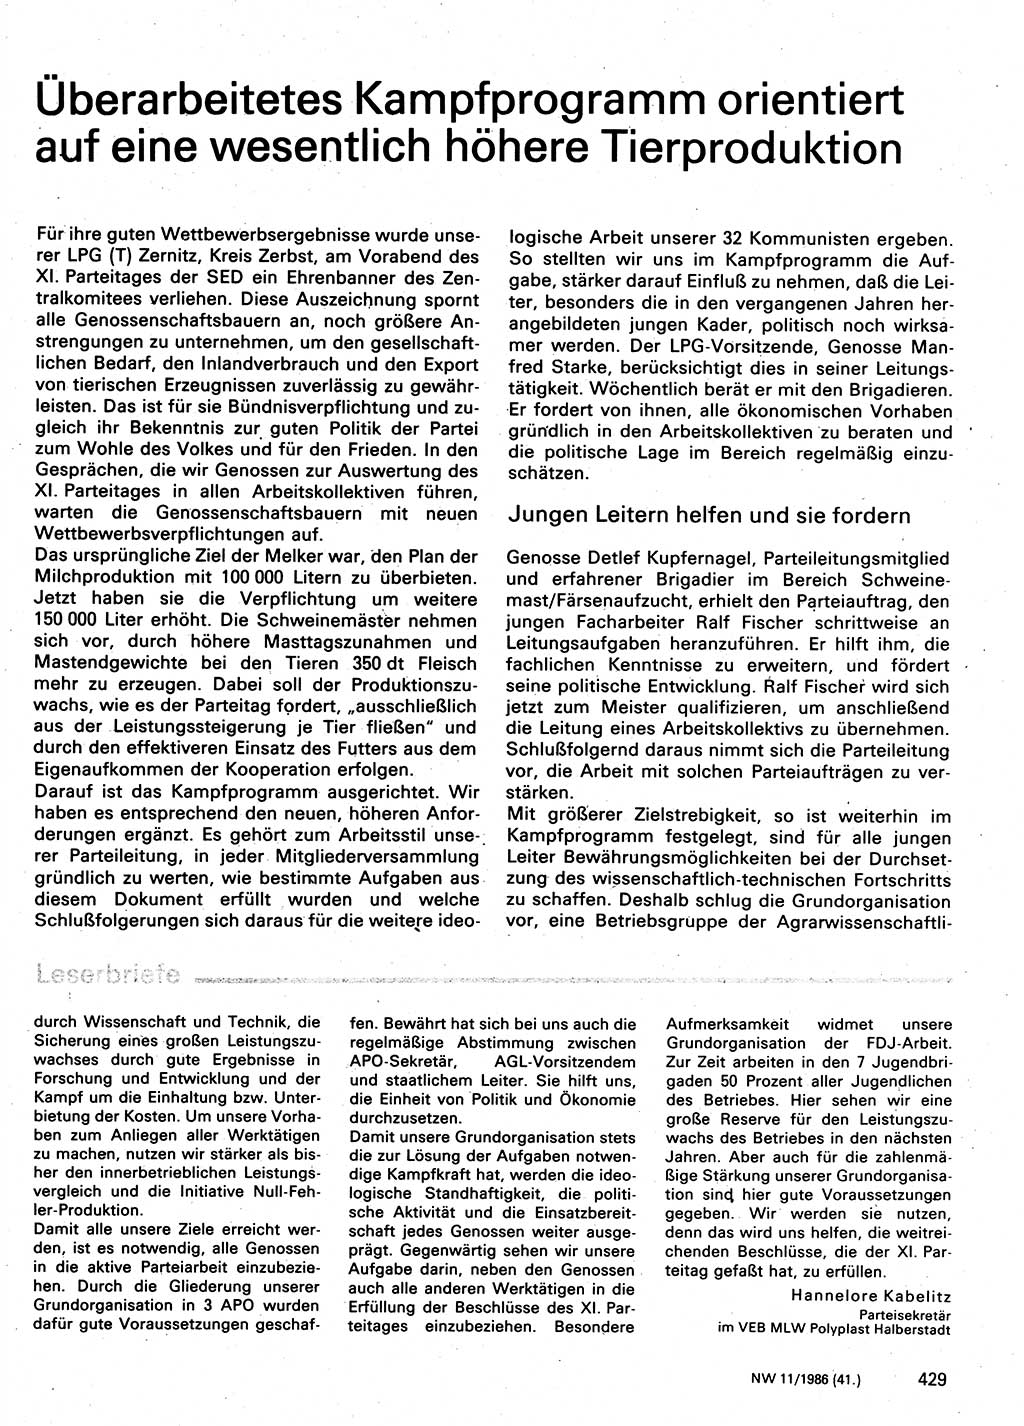 Neuer Weg (NW), Organ des Zentralkomitees (ZK) der SED (Sozialistische Einheitspartei Deutschlands) für Fragen des Parteilebens, 41. Jahrgang [Deutsche Demokratische Republik (DDR)] 1986, Seite 429 (NW ZK SED DDR 1986, S. 429)